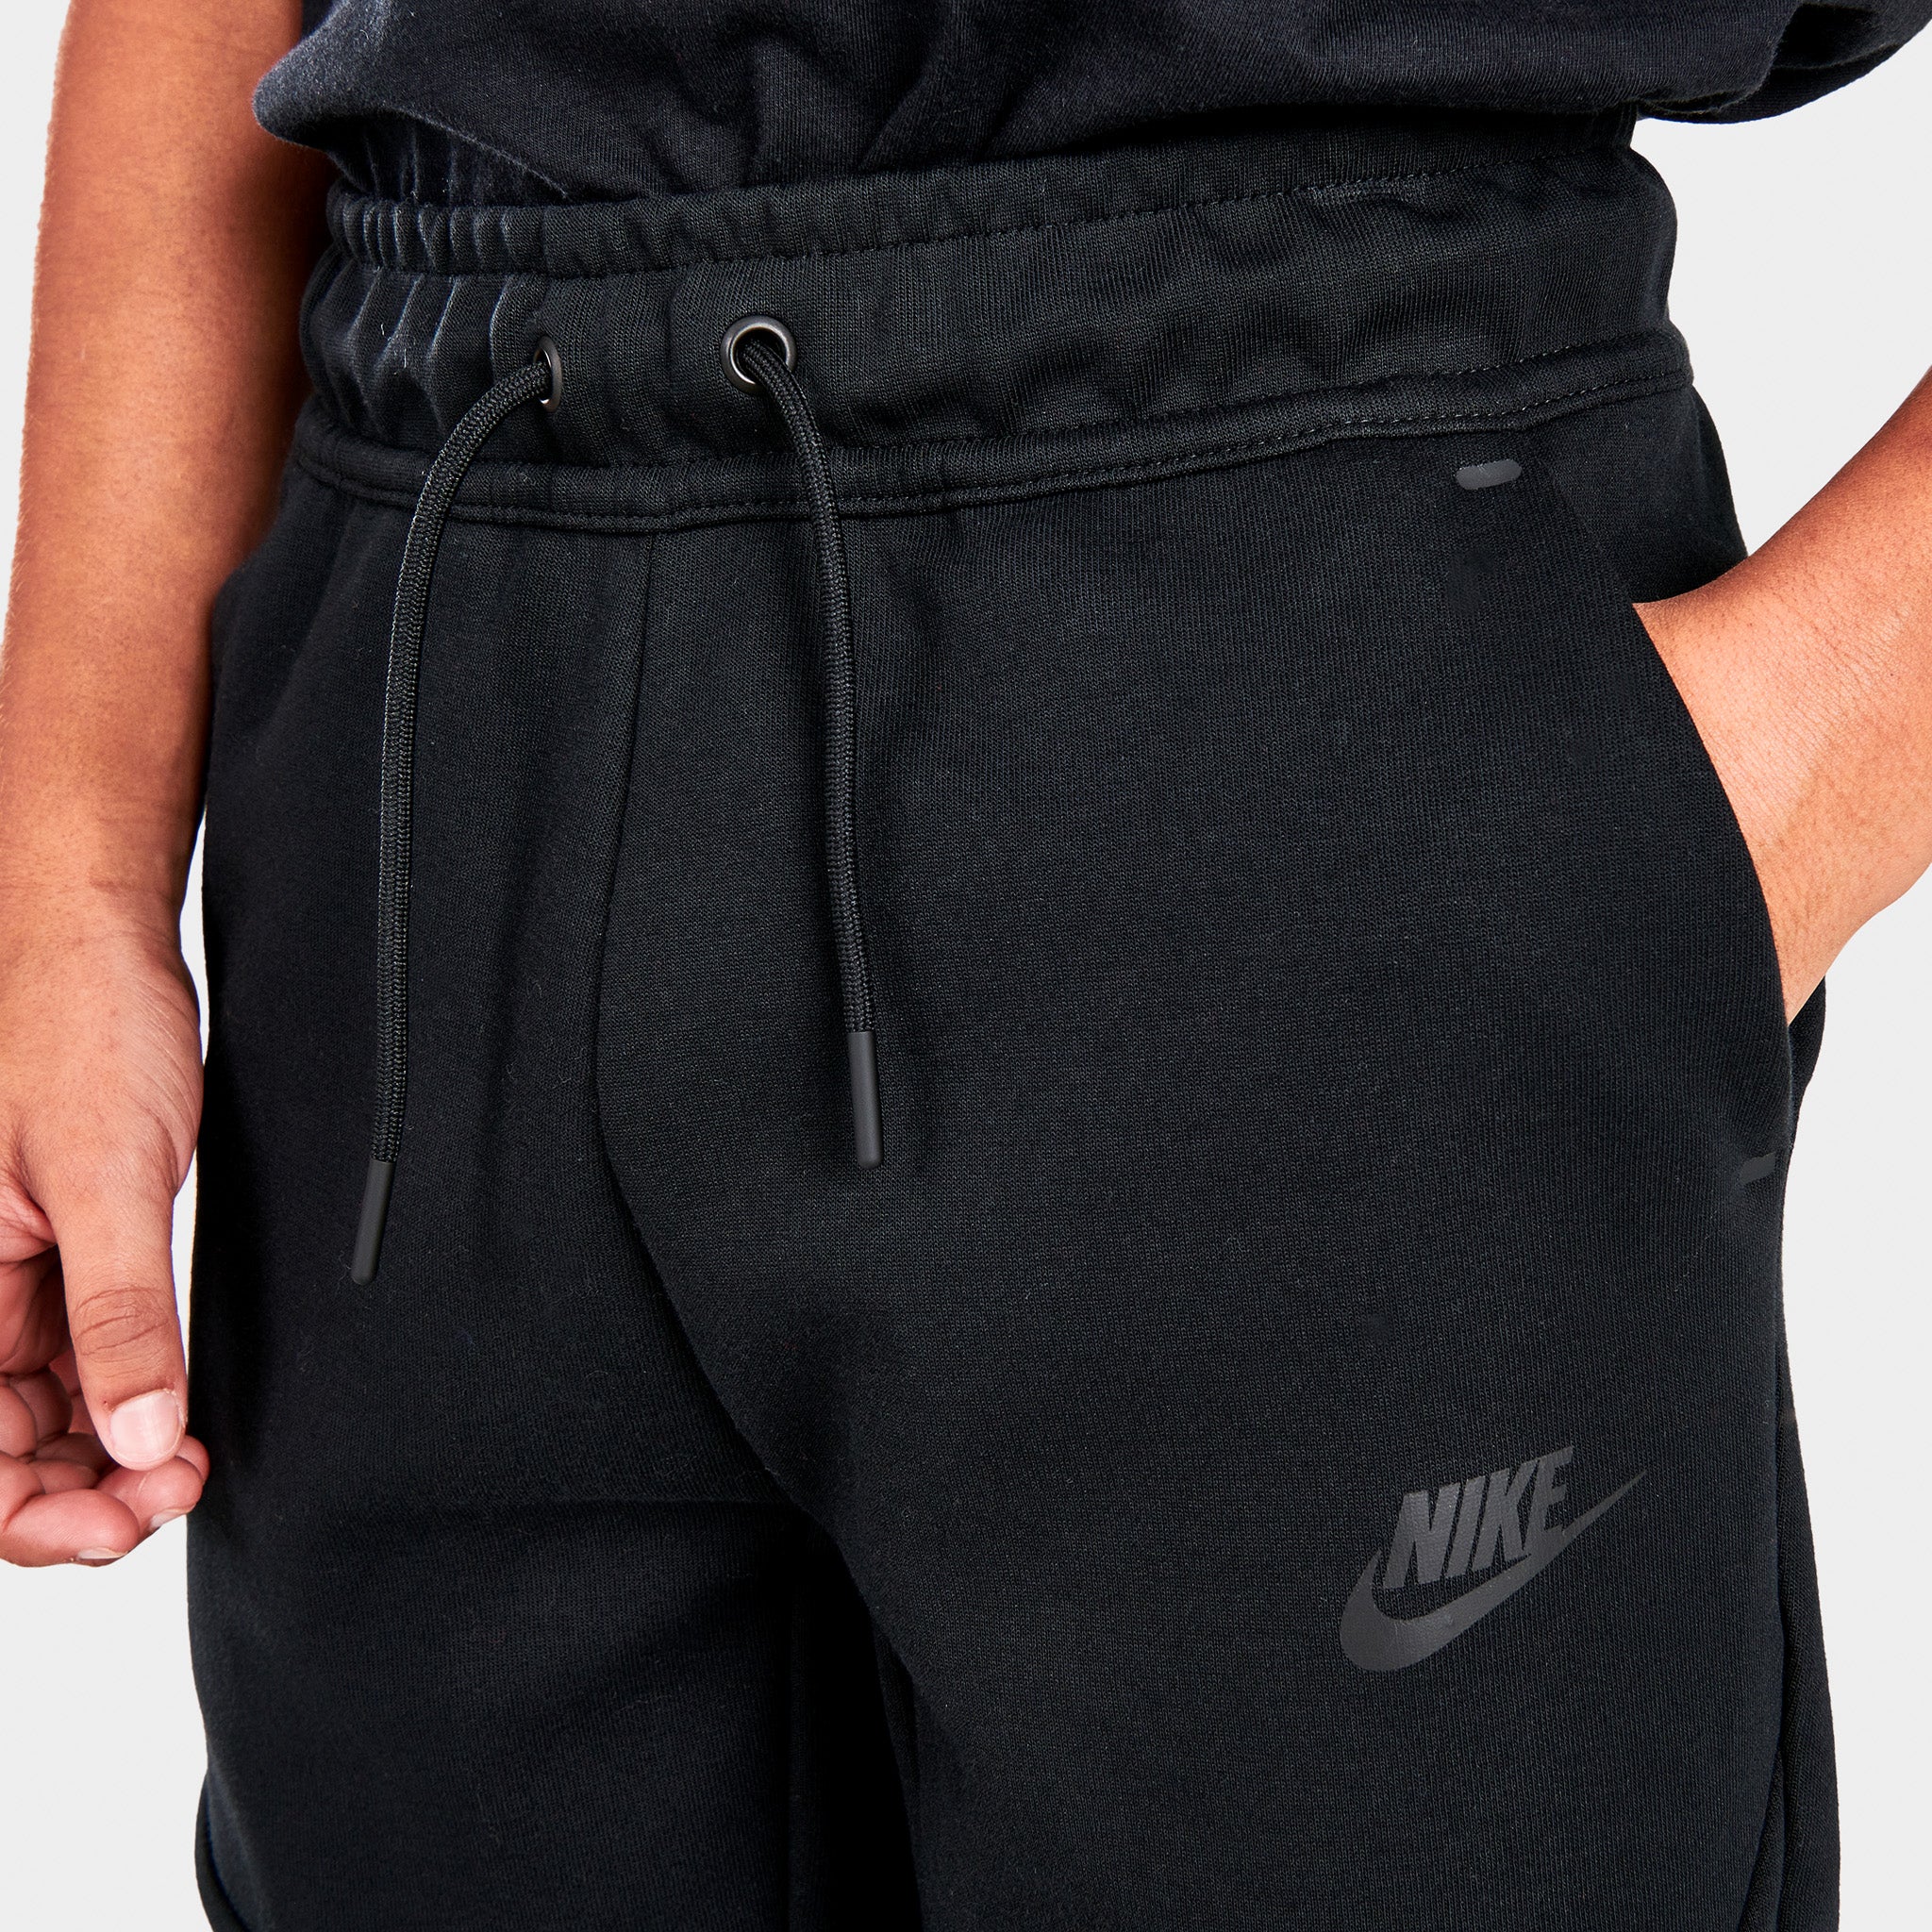 Nike Sportswear Junior Boys’ Tech Fleece Joggers Black /